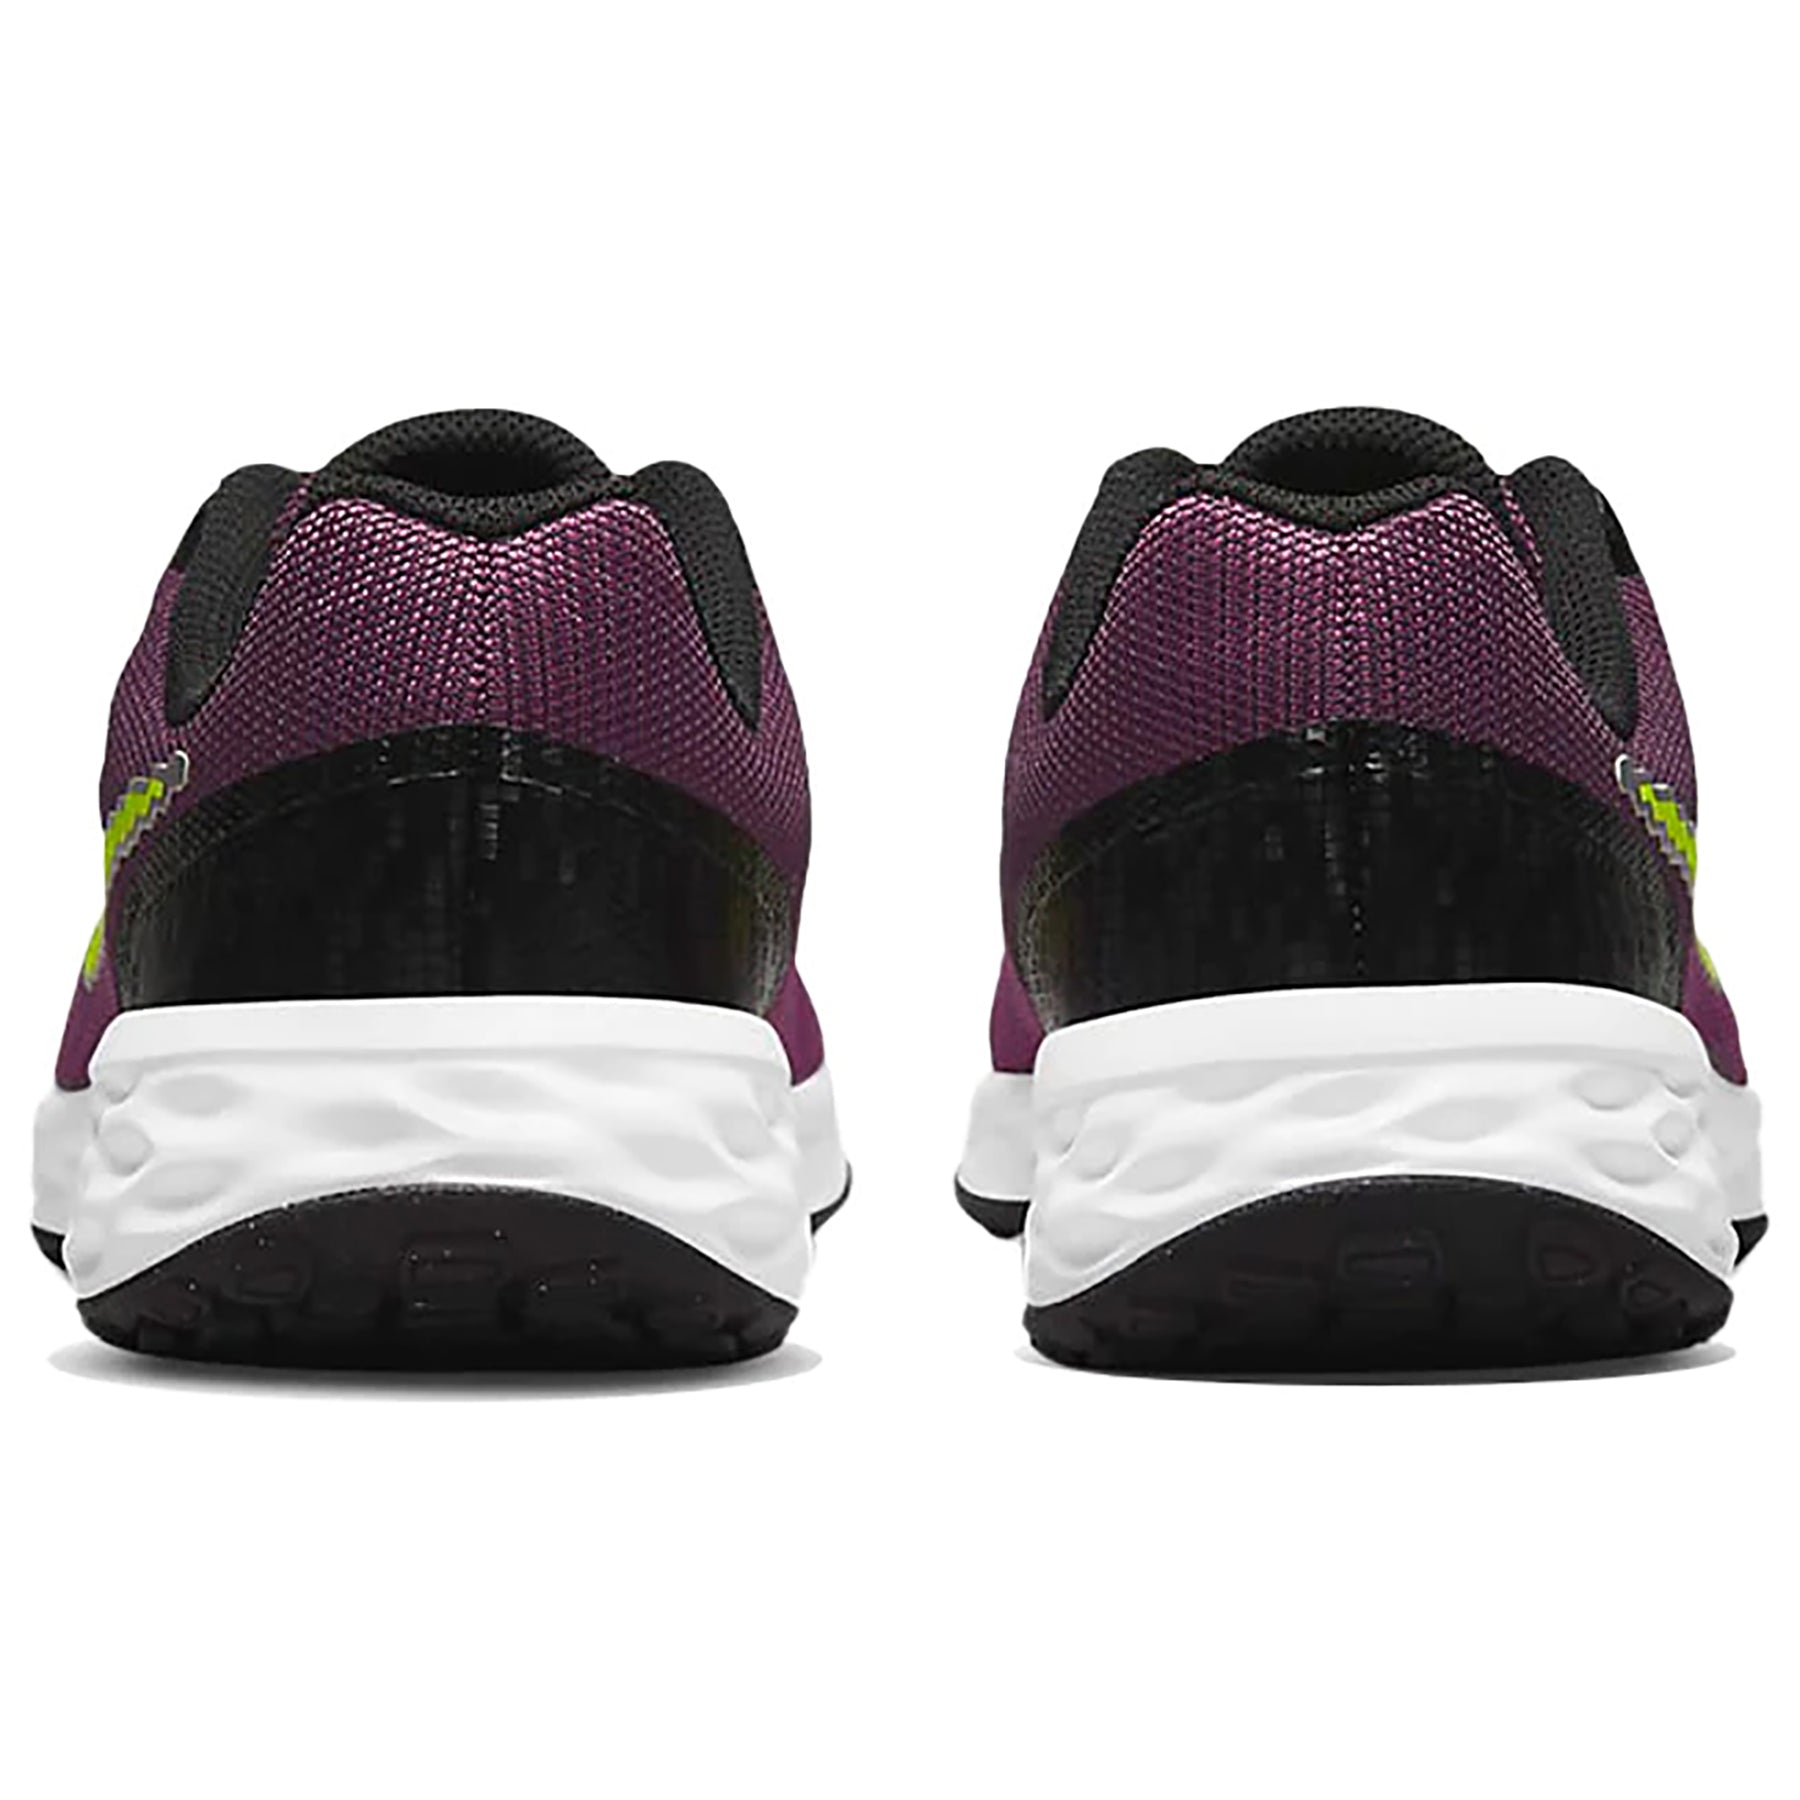 Zapatillas Nike Mujer Running Revolution 6 SE | DJ1987-607